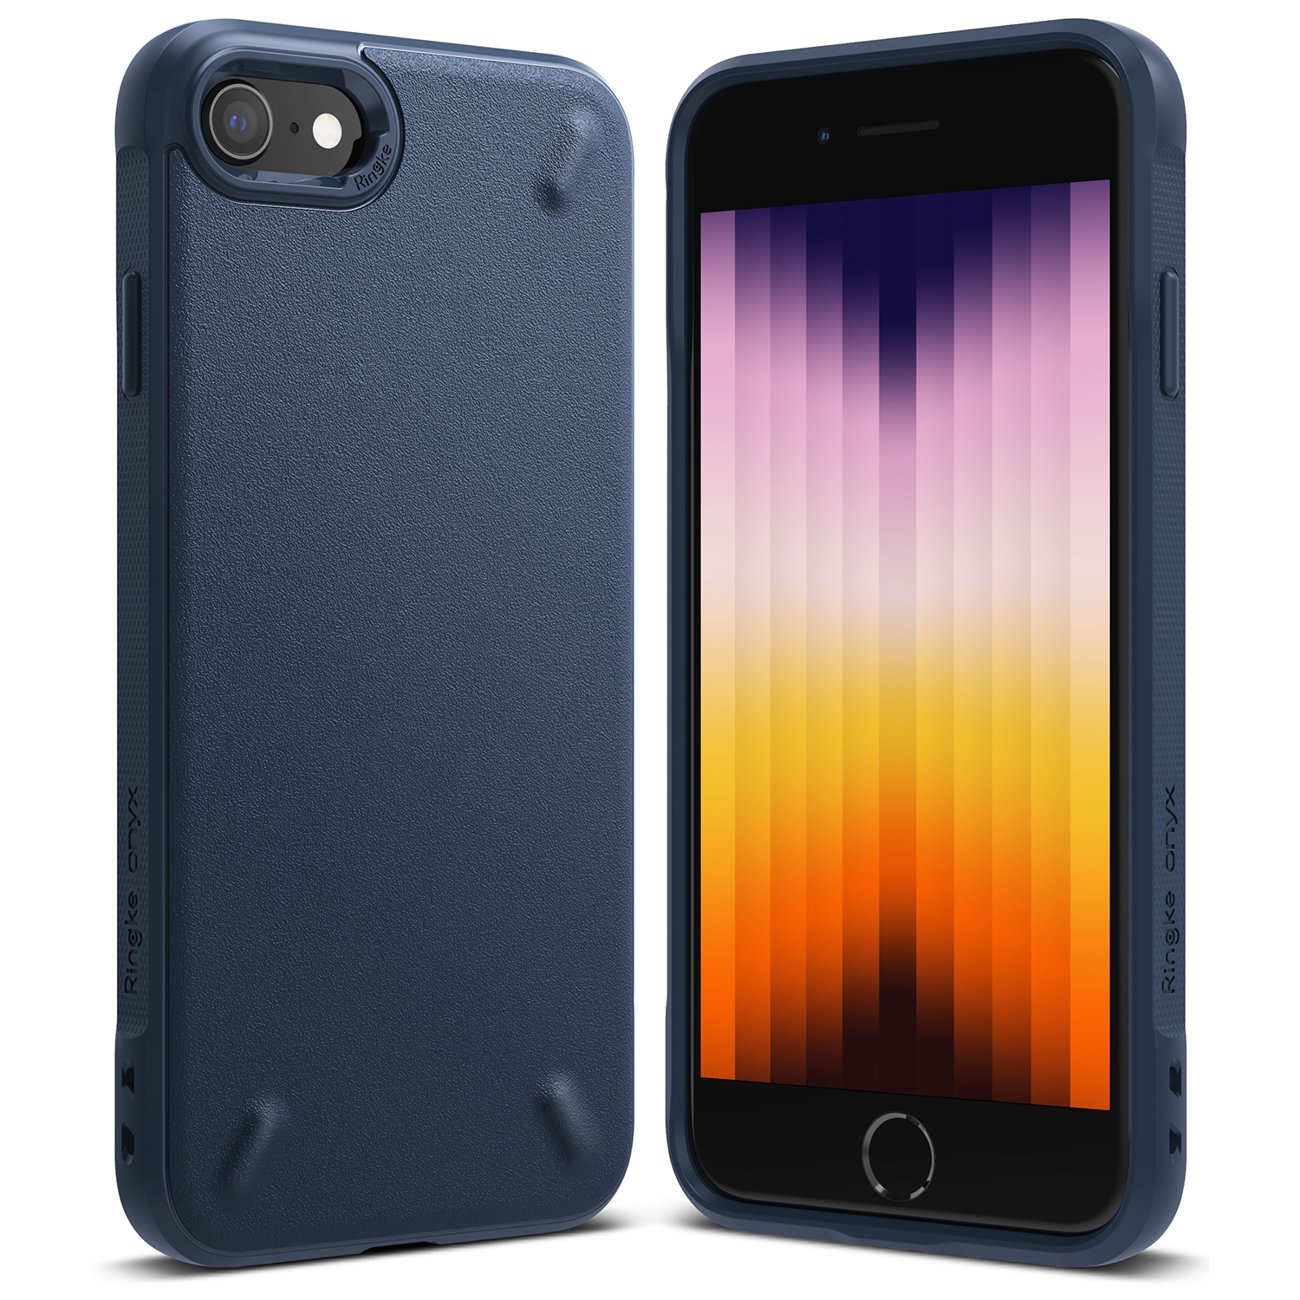 iPhone SE 2022 / SE 2020 / iPhone 8 / iPhone 7 Ringke Onyx fokozott védelmet nyújtó tok sötétkék